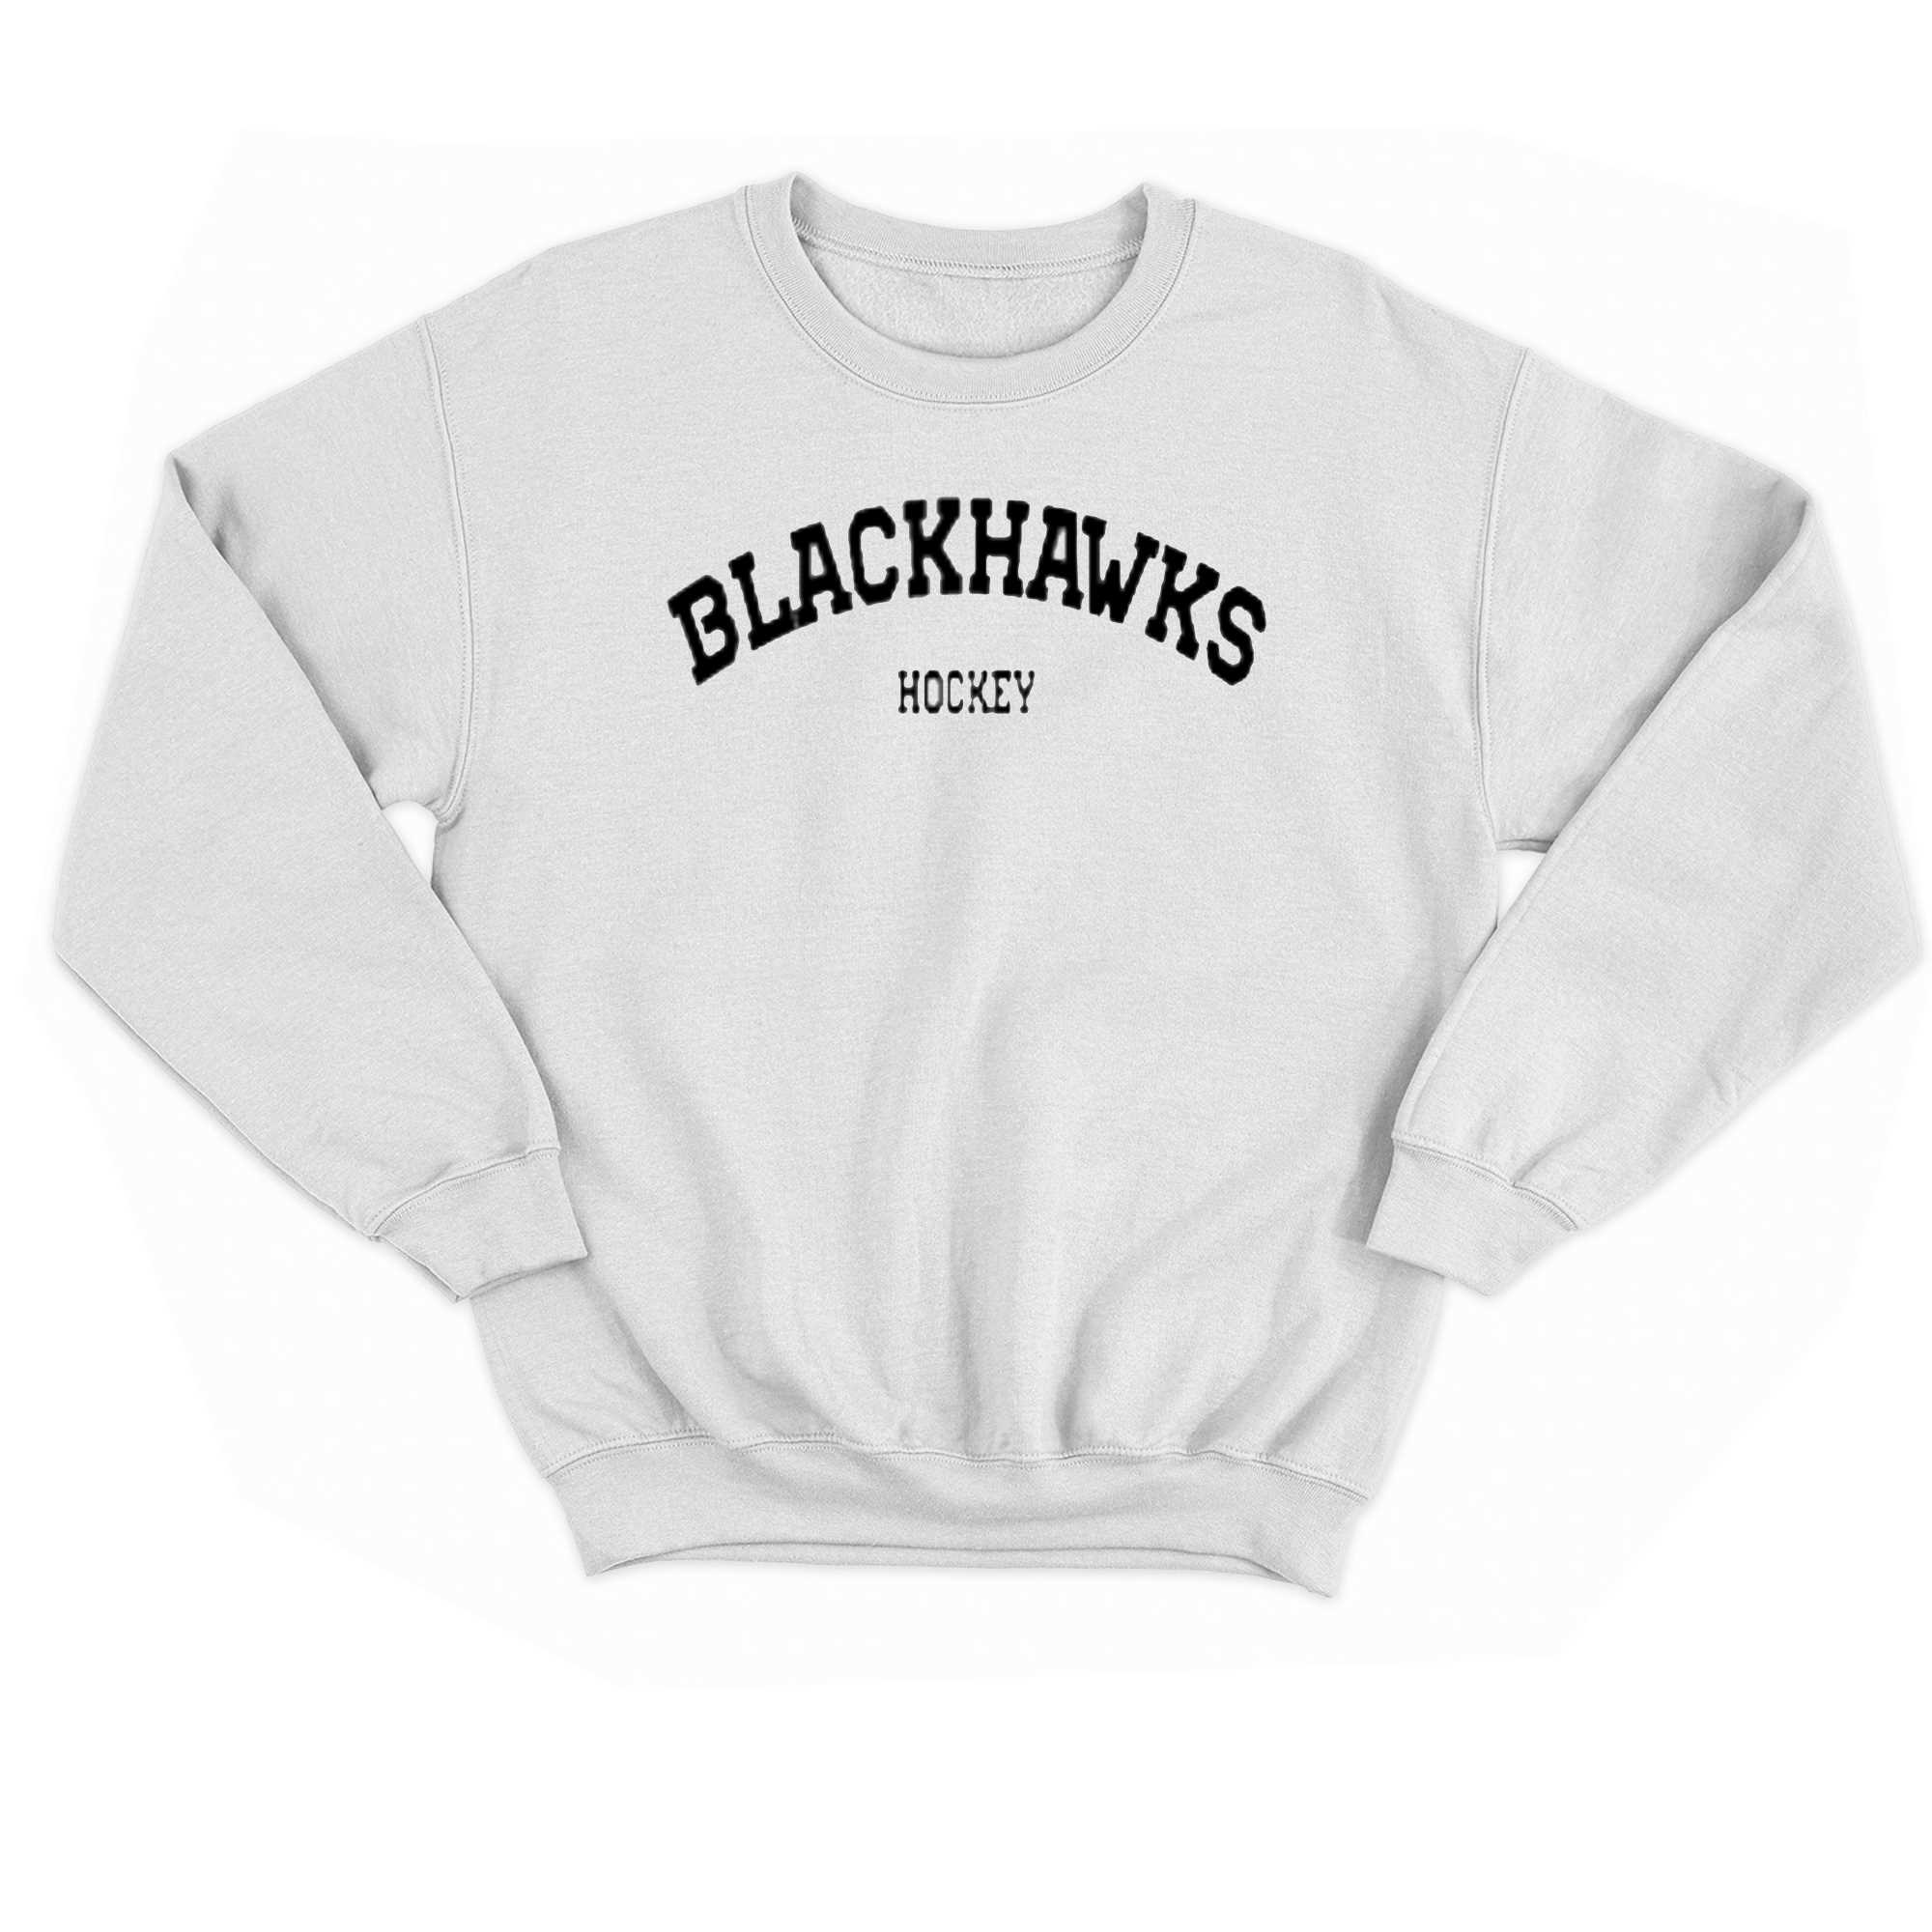 Meghan Chayka Blackhawks Hockey T-shirt 